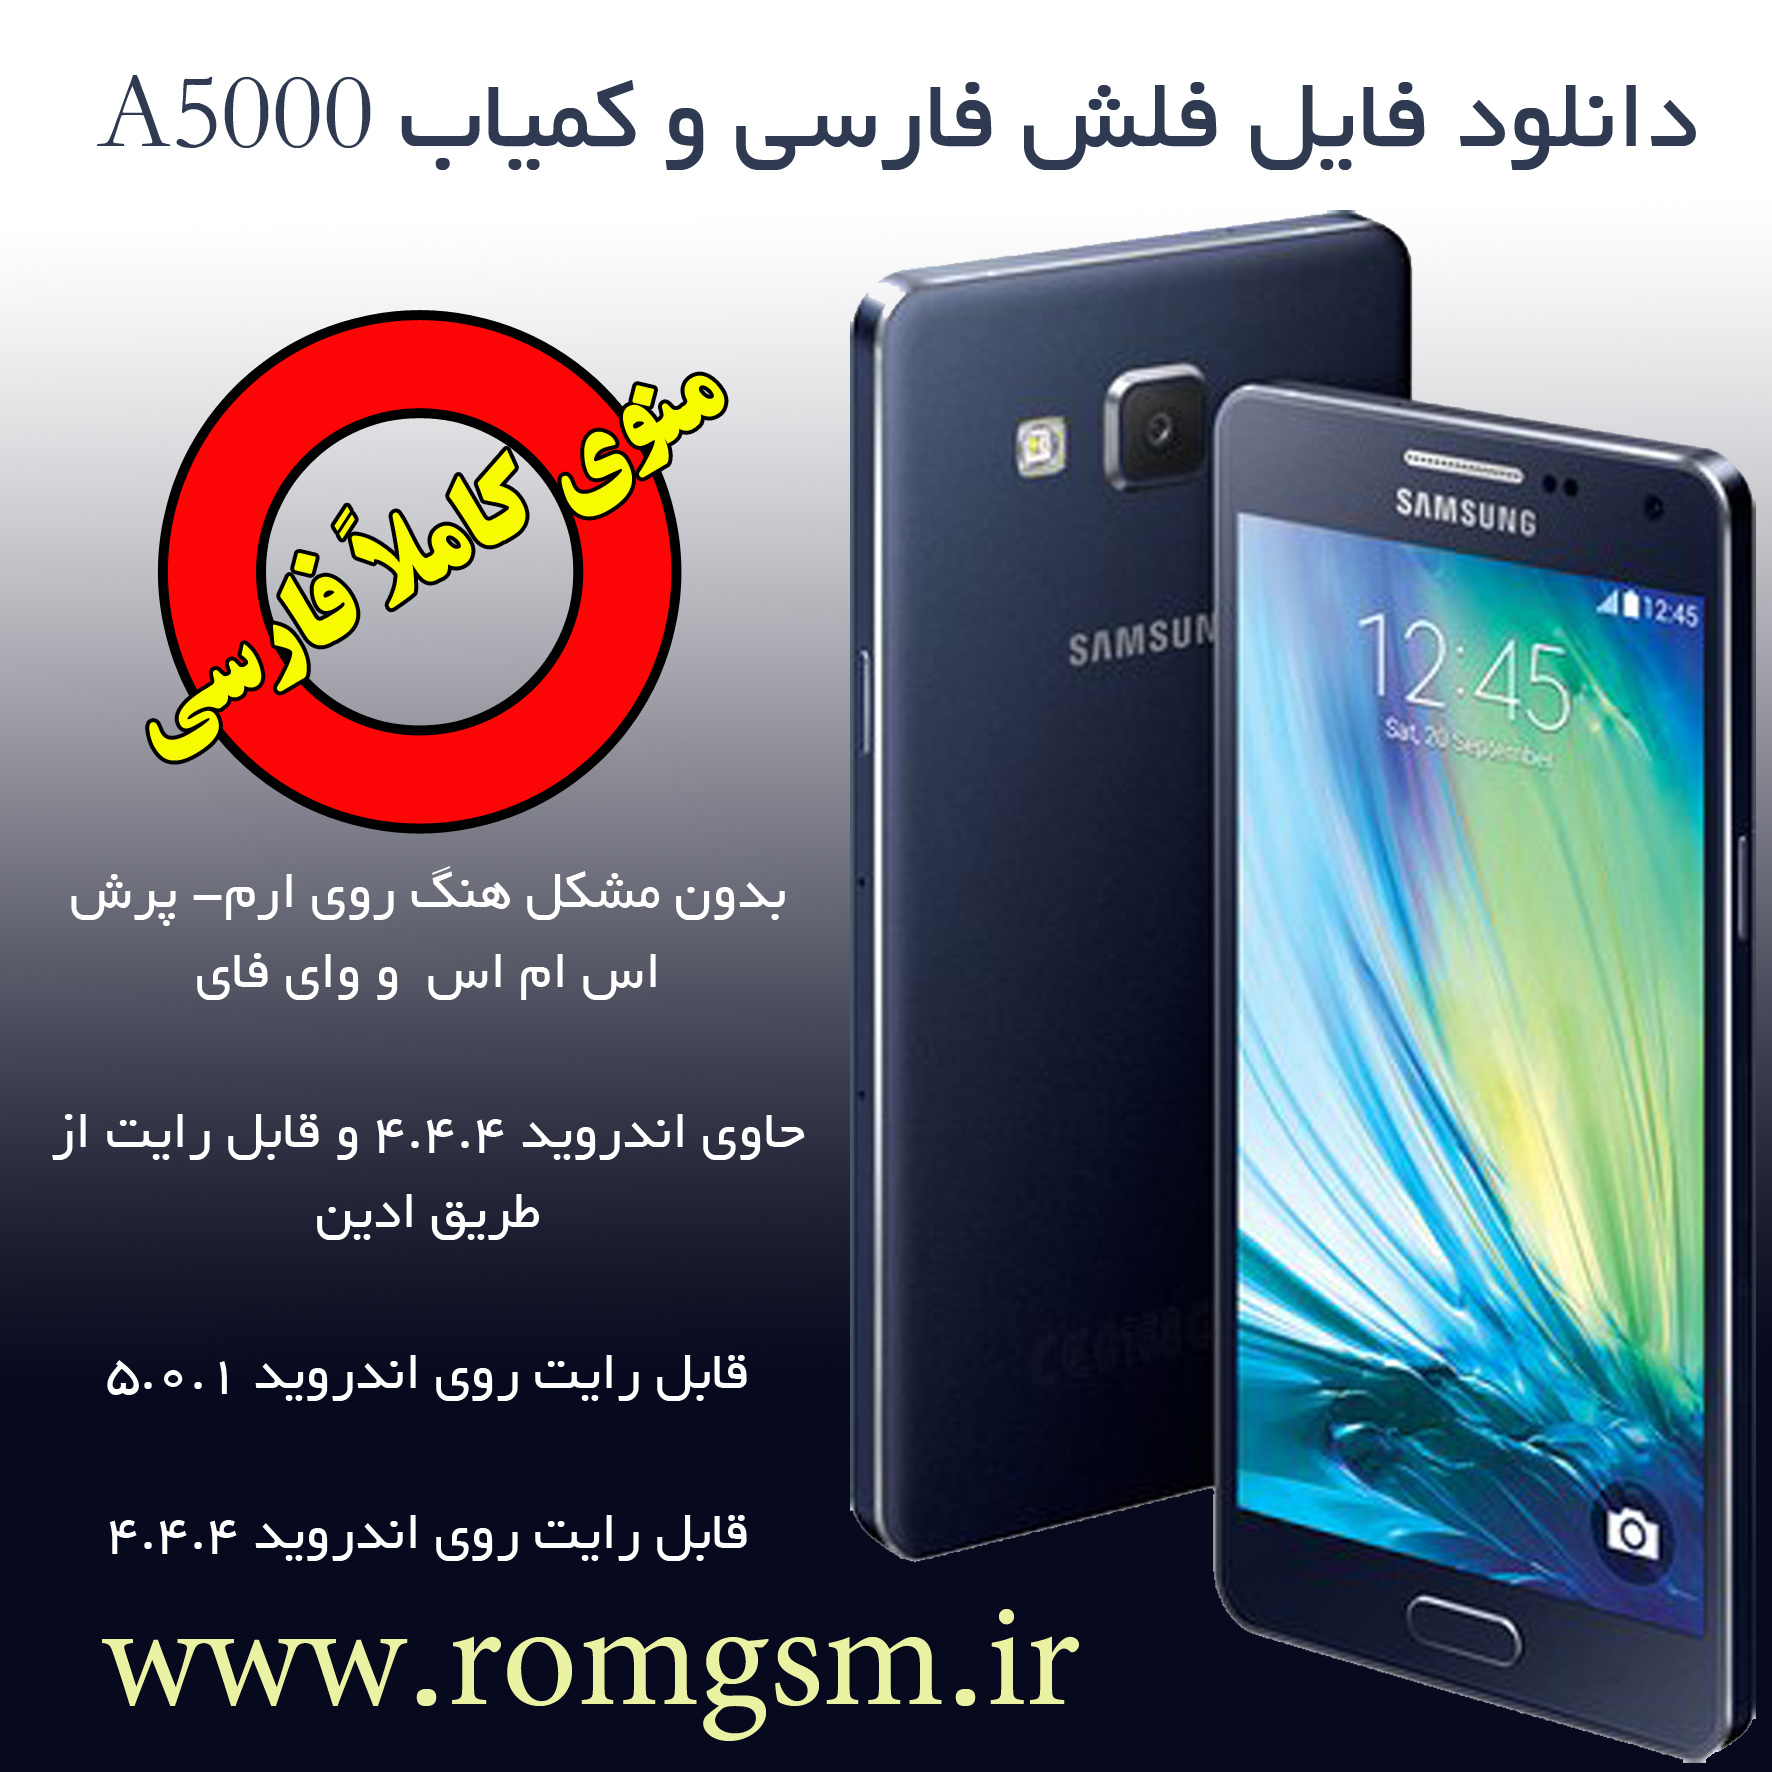 فایل فلش رسمی و فارسی ساموسنگ مدل (Samsung A5000 (A500F 